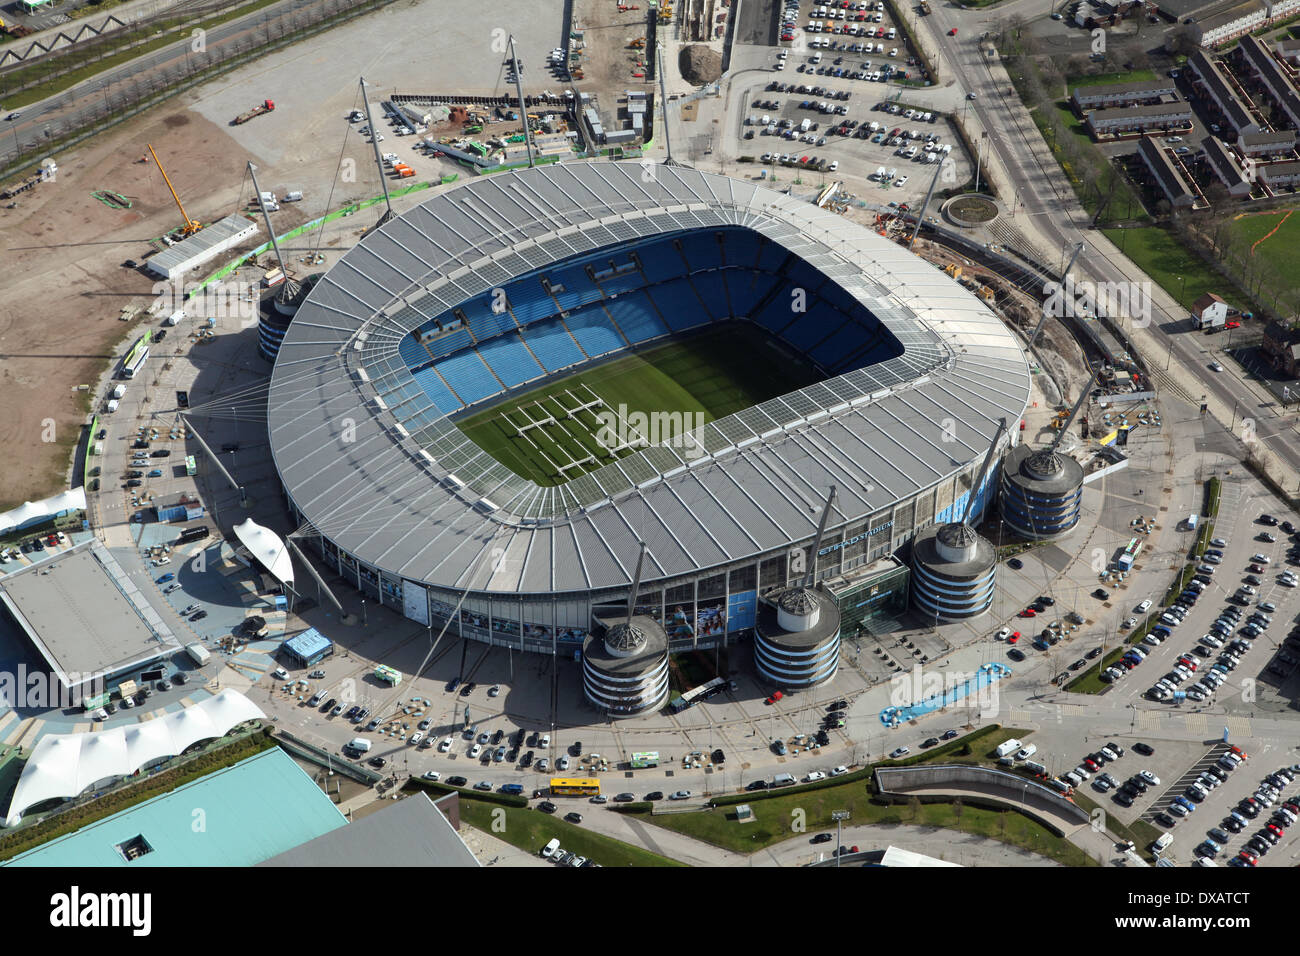 Vue aérienne de l'Etihad Stadium de football de Manchester. Maison de Manchester City Football club. Banque D'Images